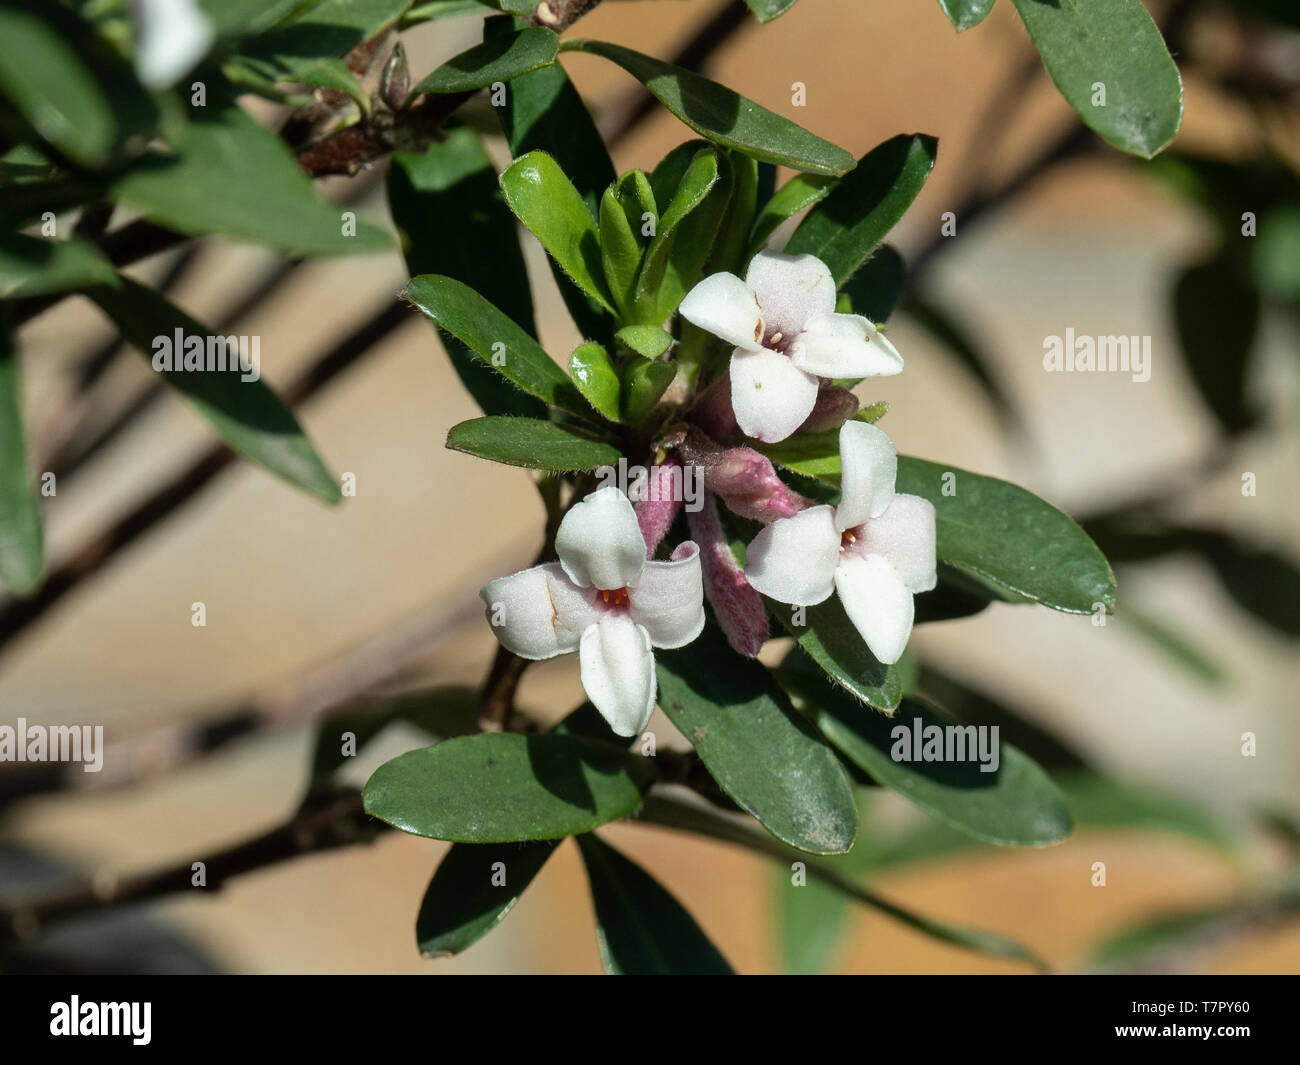 Una de las claras flores blancas de Daphne x transatlántico fragancia eterna Foto de stock